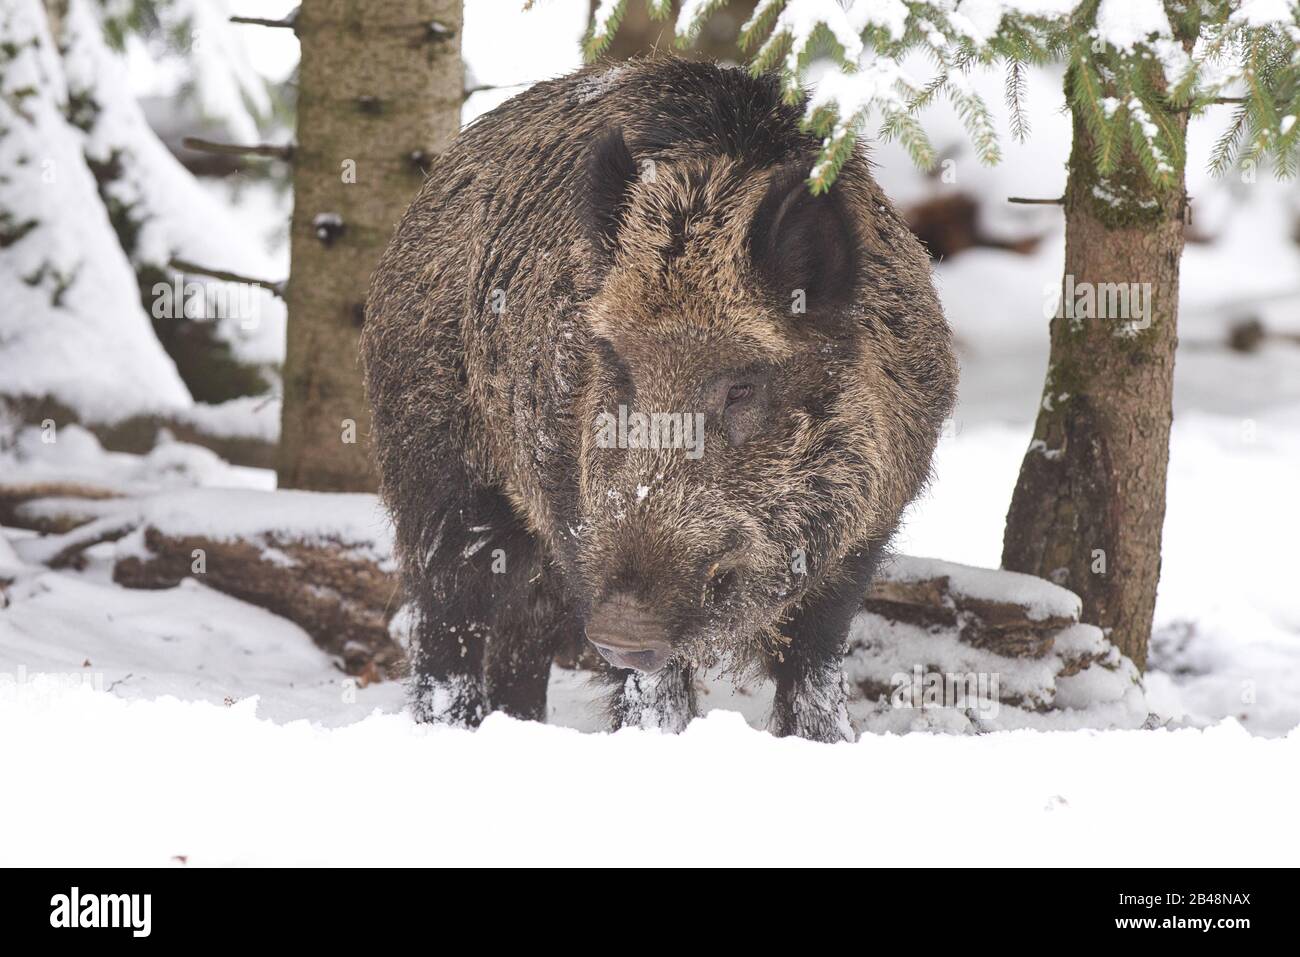 Wildschwein, Sus scrofa, sus, wild boar, sau,pig,paarhufer, allesfresser, Laurasiatheria, porcus, winter,snow, Stock Photo